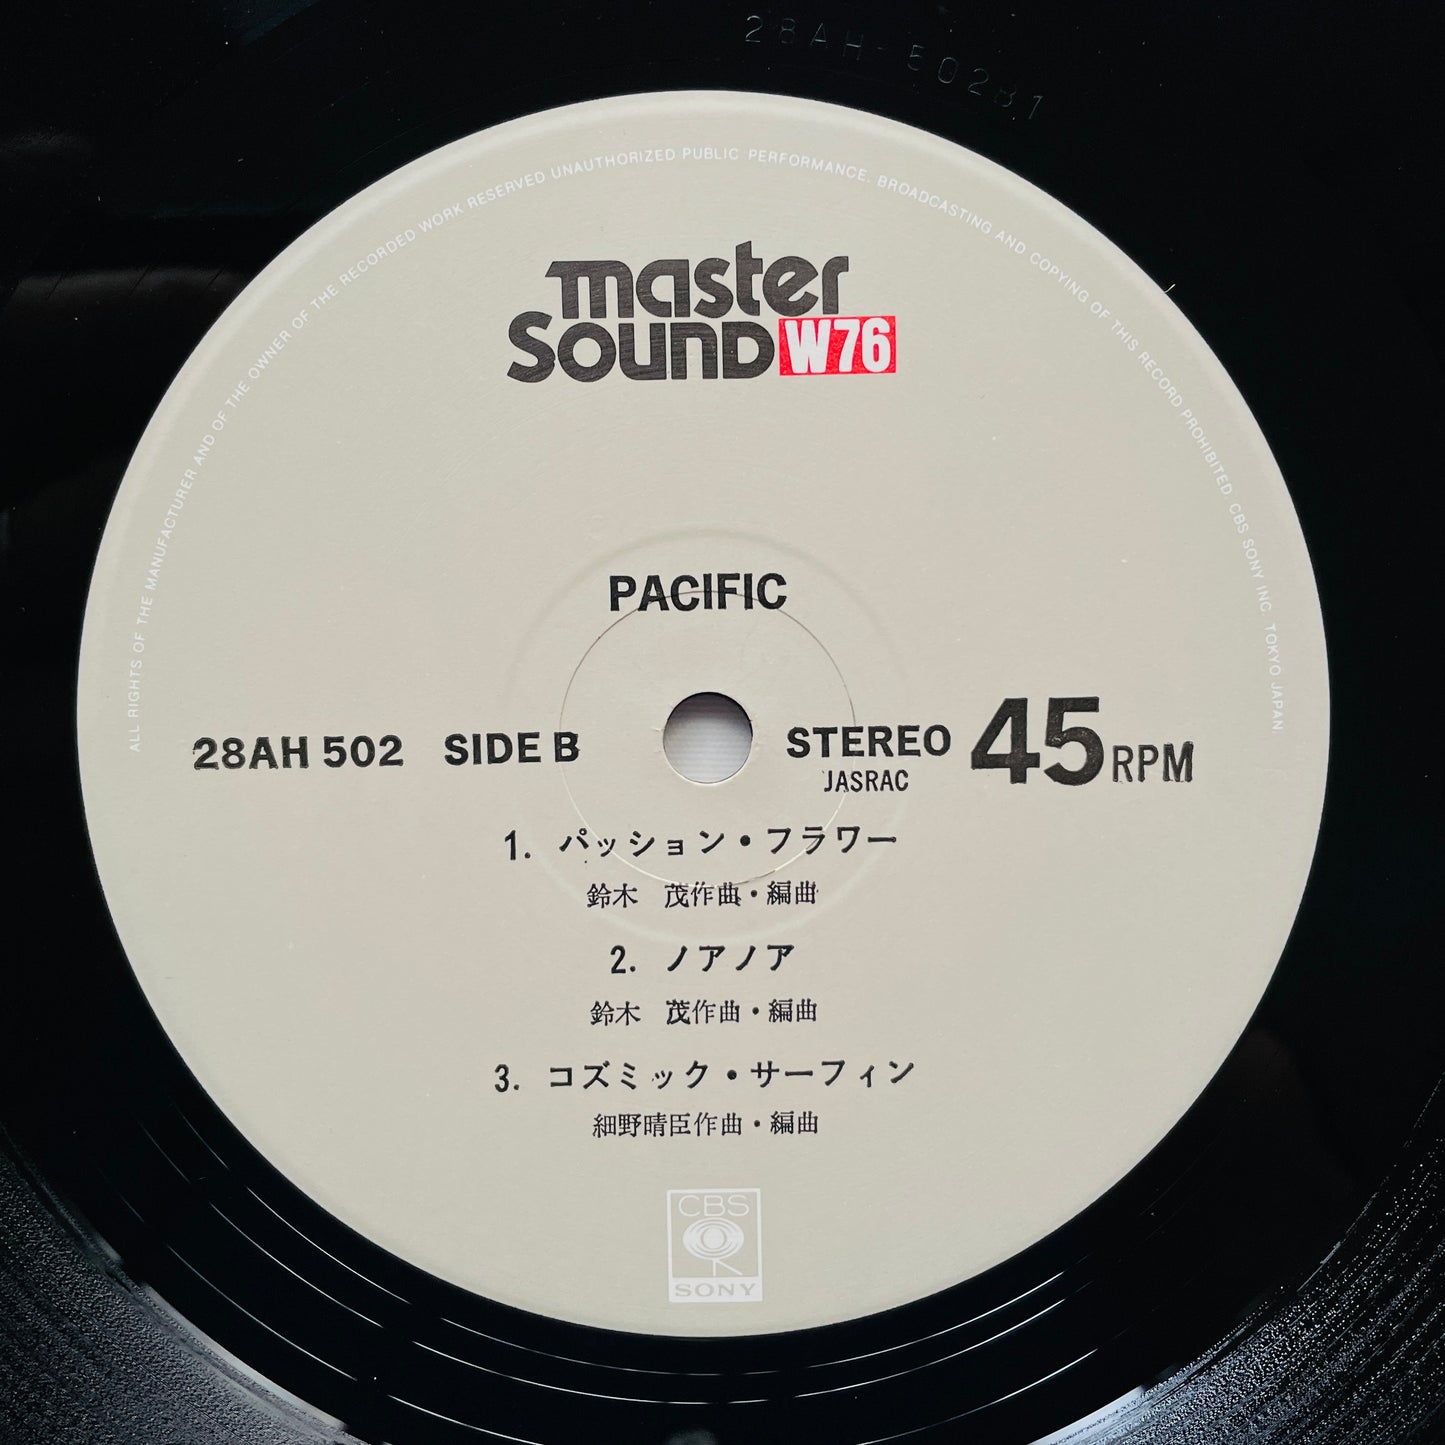 Haruomi Hosono, Shigeru Suzuki, Tatsuro Yamashita – Pacific (Original, Audiophile, w/Poster)